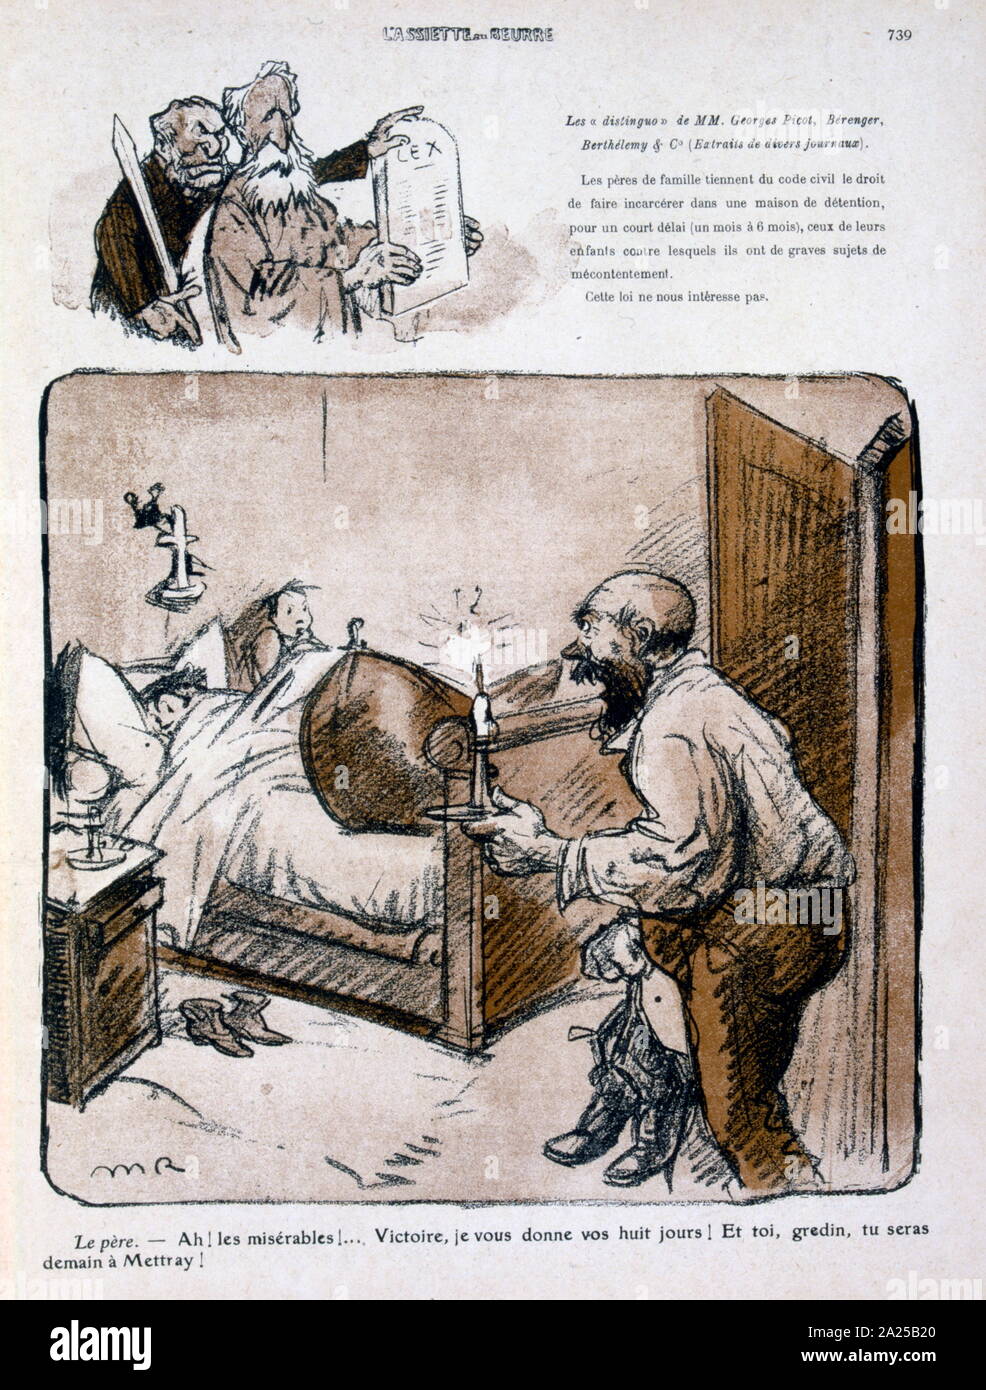 Illustration satirique français, 1909, montrant les enfants, réveillés brusquement pour le travail, dans un établissement correctionnel Banque D'Images